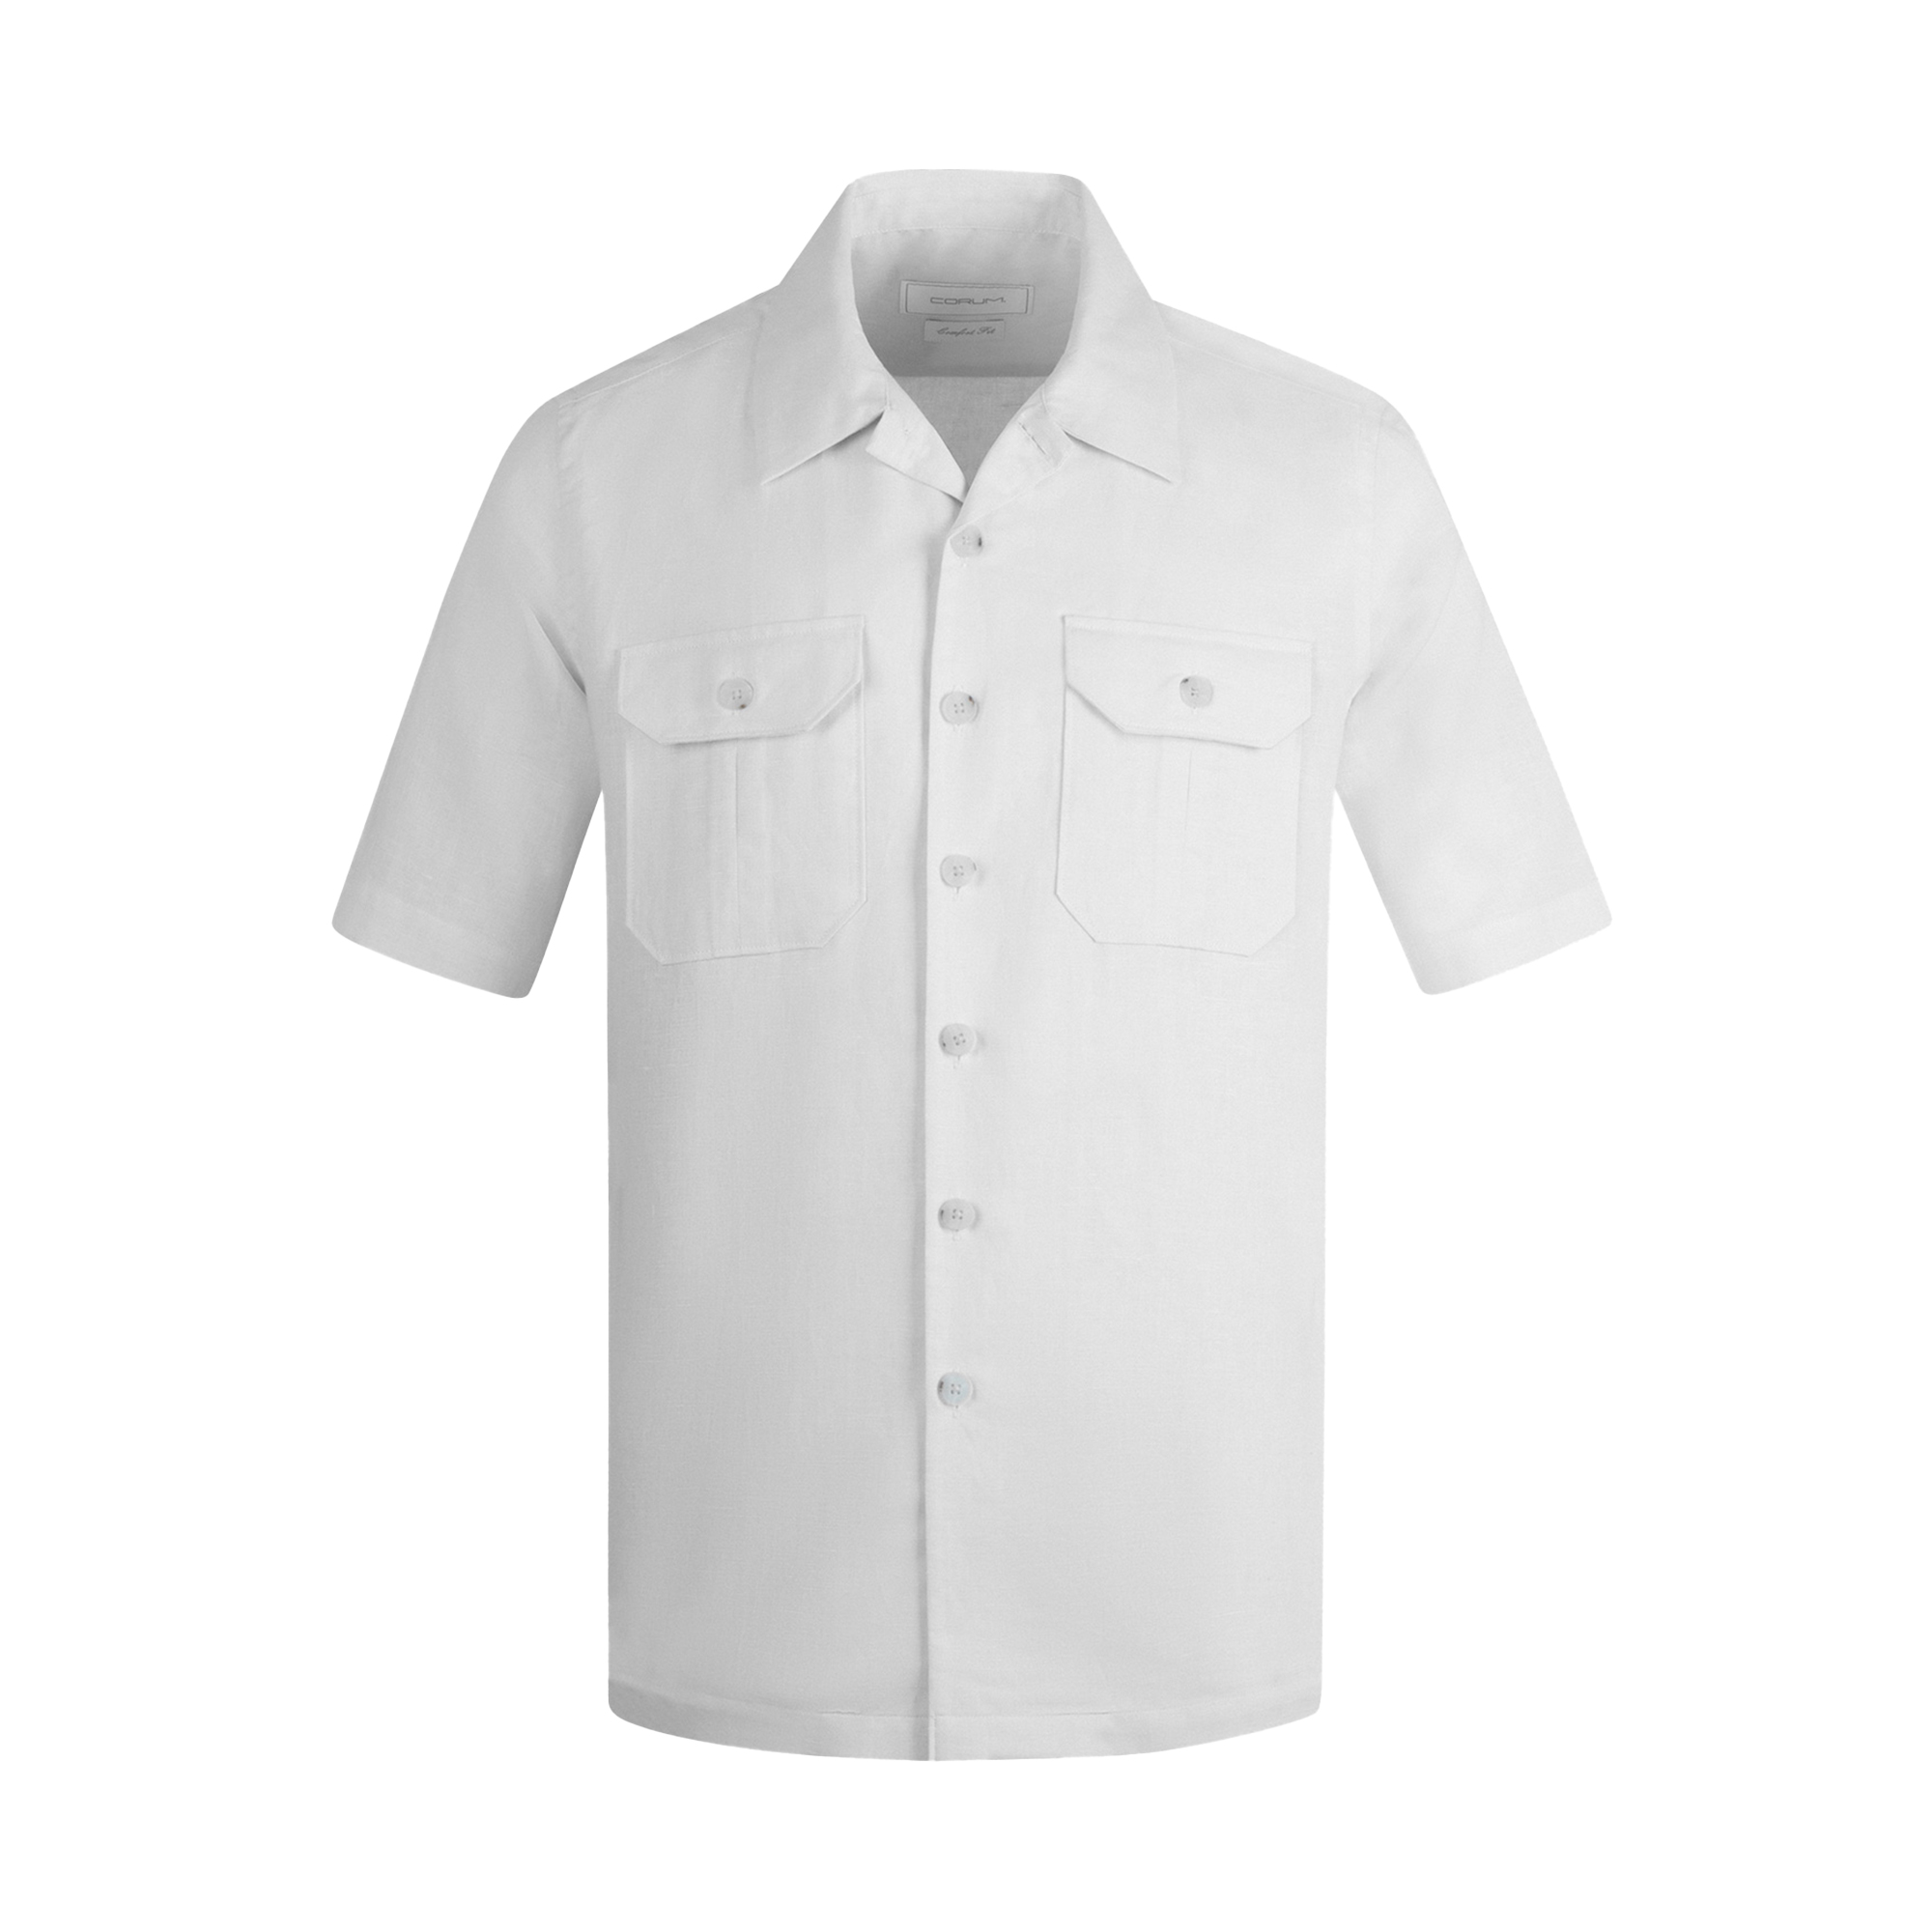 نکته خرید - قیمت روز پیراهن آستین کوتاه مردانه کروم مدل 2410151 خرید